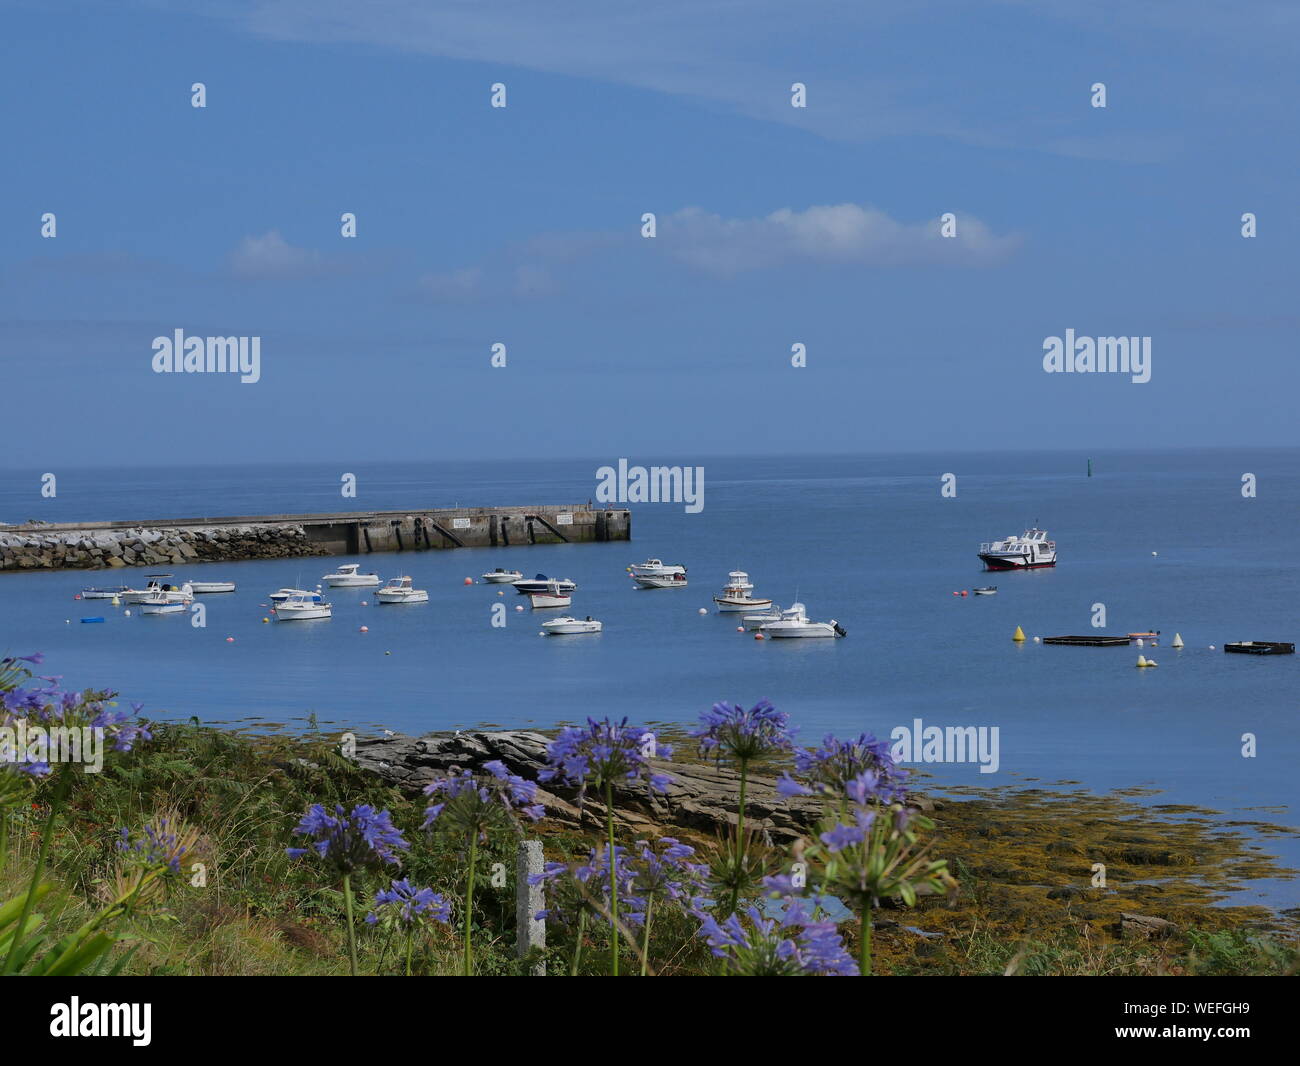 L'île de molène et son merveilleux port et ses bateaux multicolori et ses quais en granit et onu banc bleu et blanc et l'île prise depuis le grandi Foto Stock